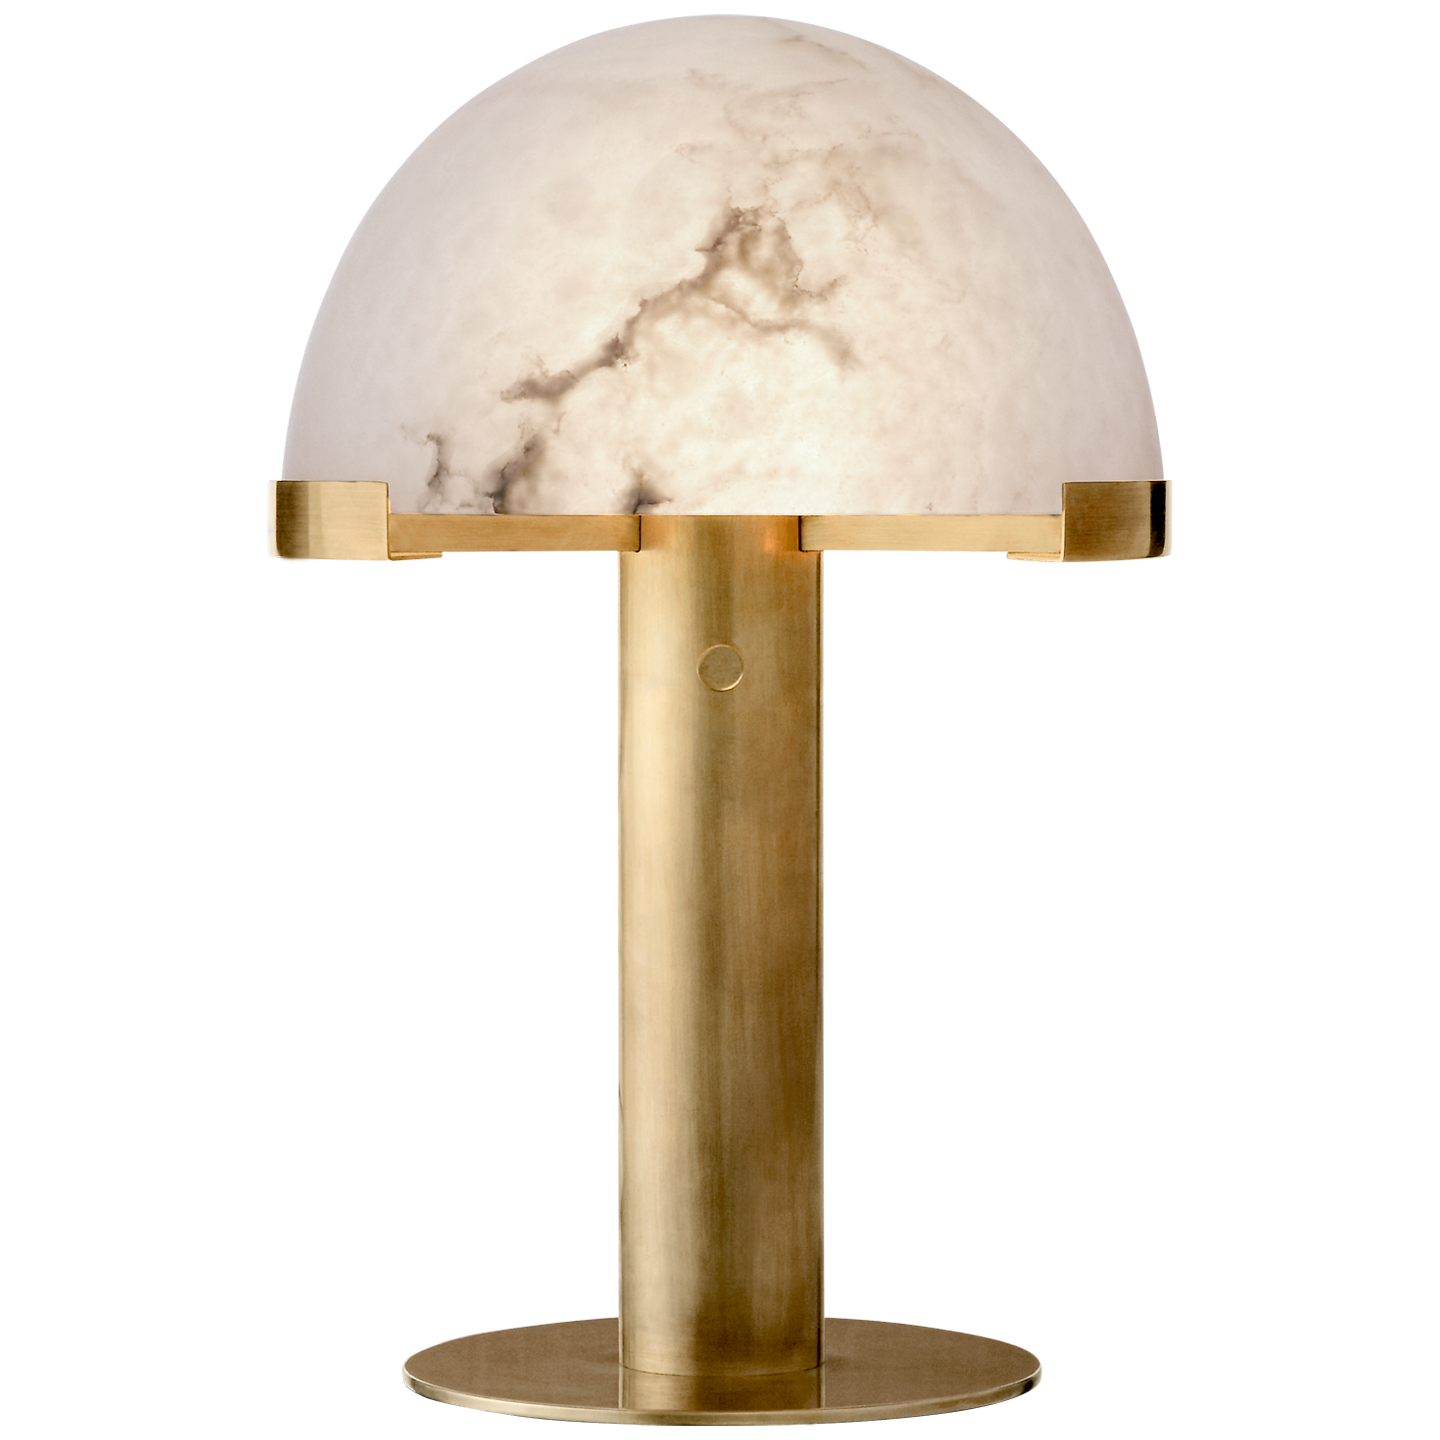 Melange desk lamp - Brass and Alabaster 